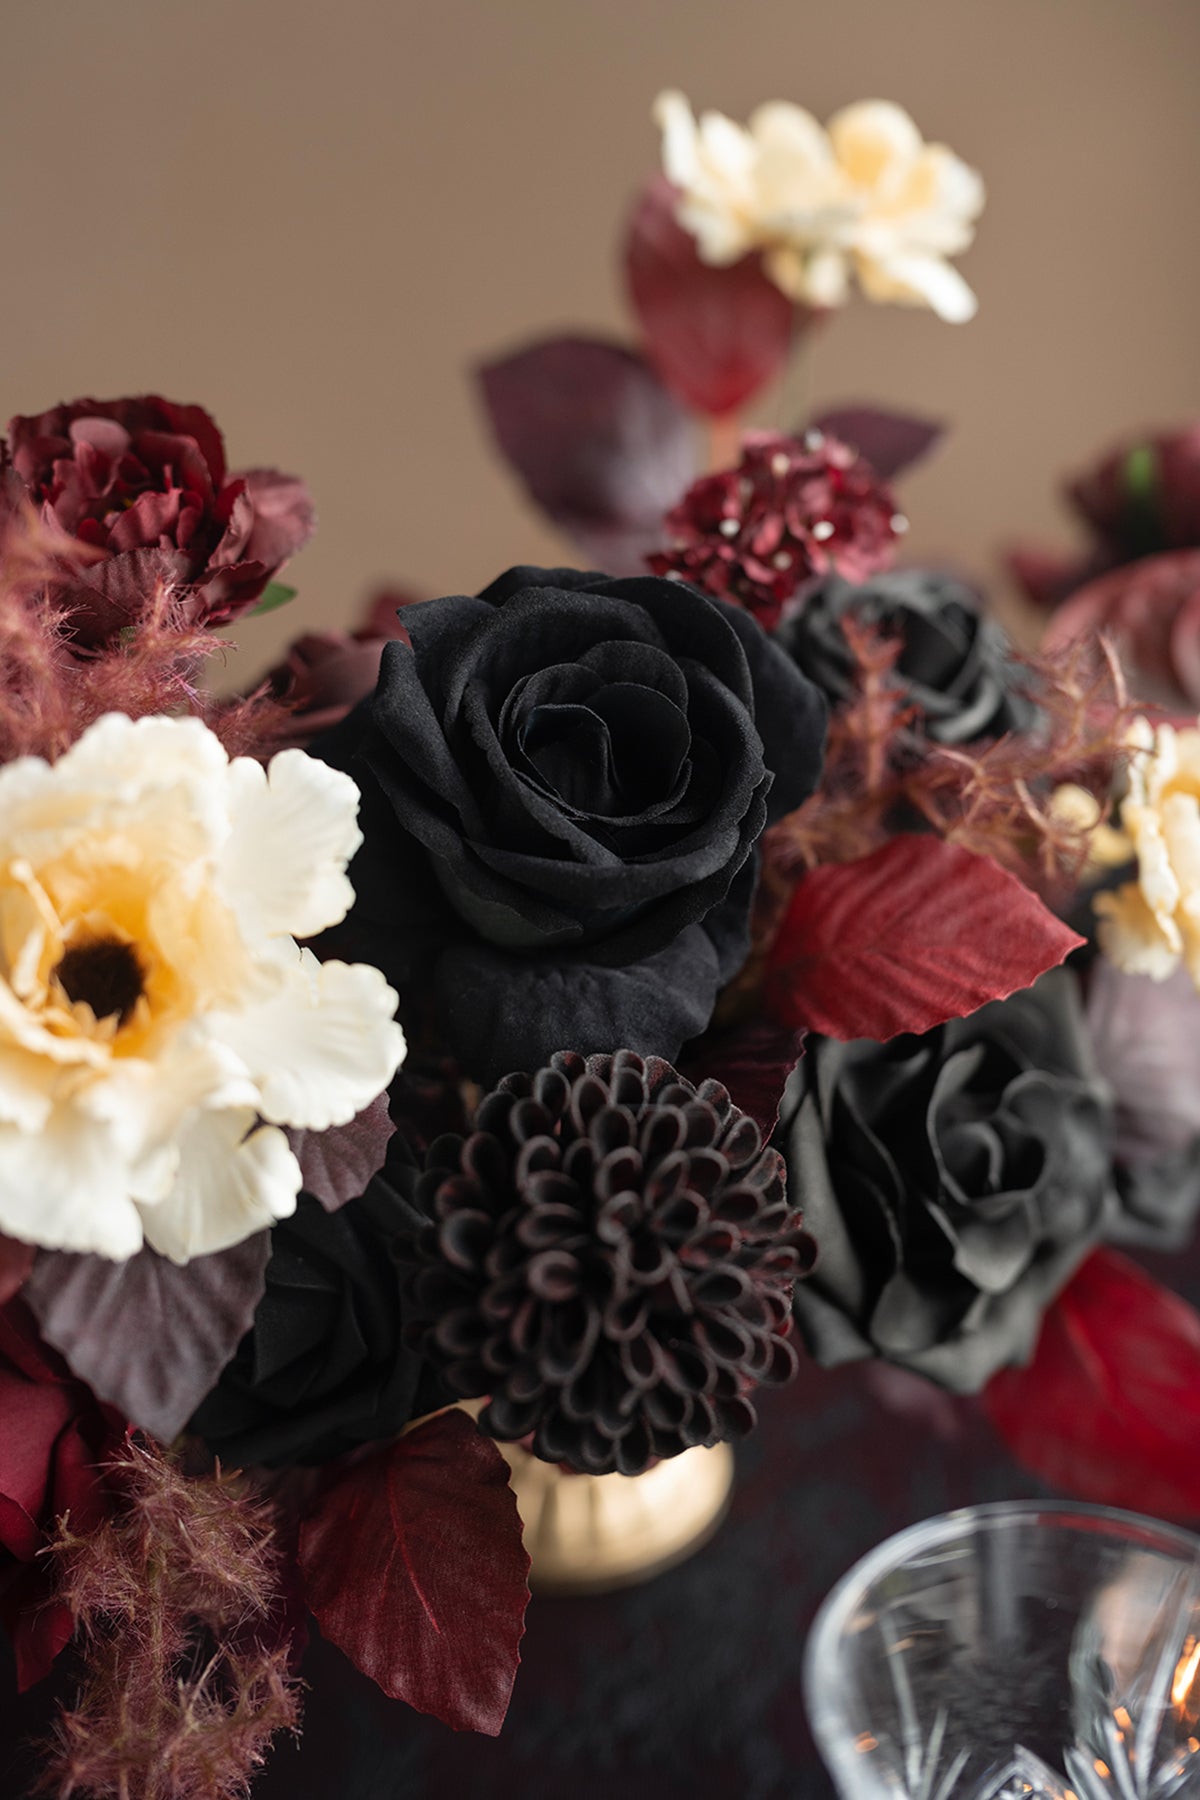 DIY Designer Flower Boxes in Moody Burgundy & Black